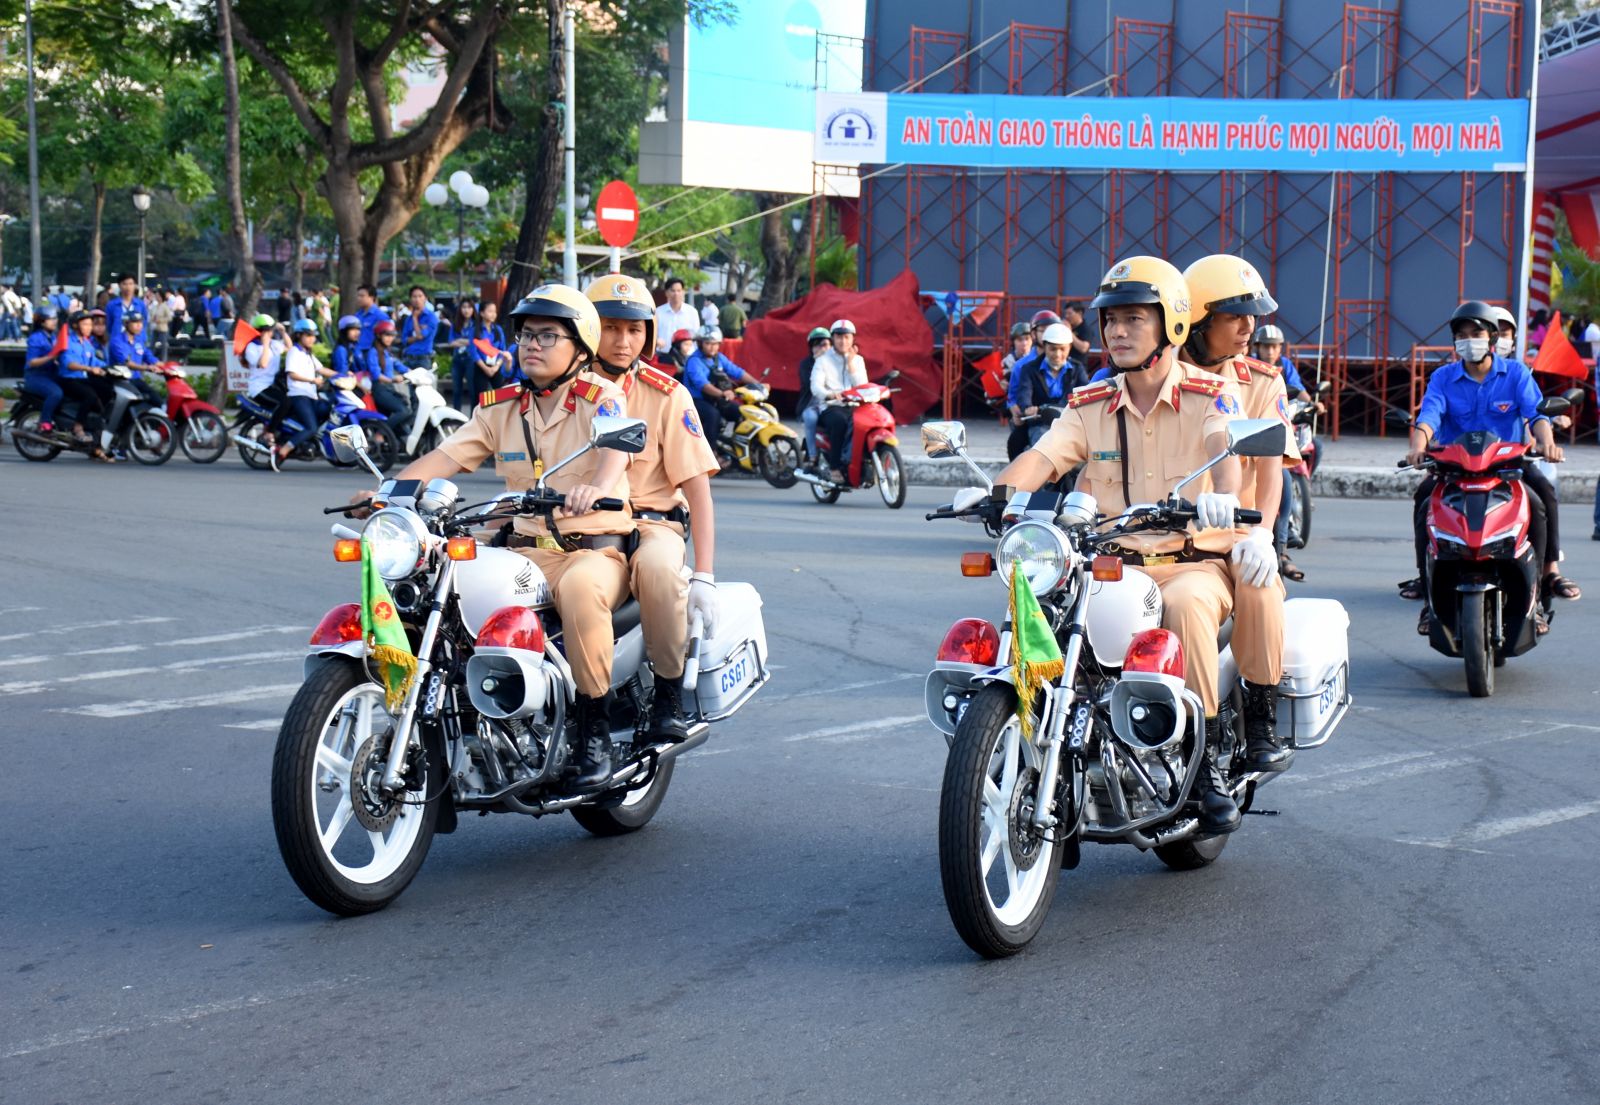 Trách nhiệm của Tổng cục Đường bộ Việt Nam trong công tác bảo đảm trật tự, an toàn giao thông đường bộ